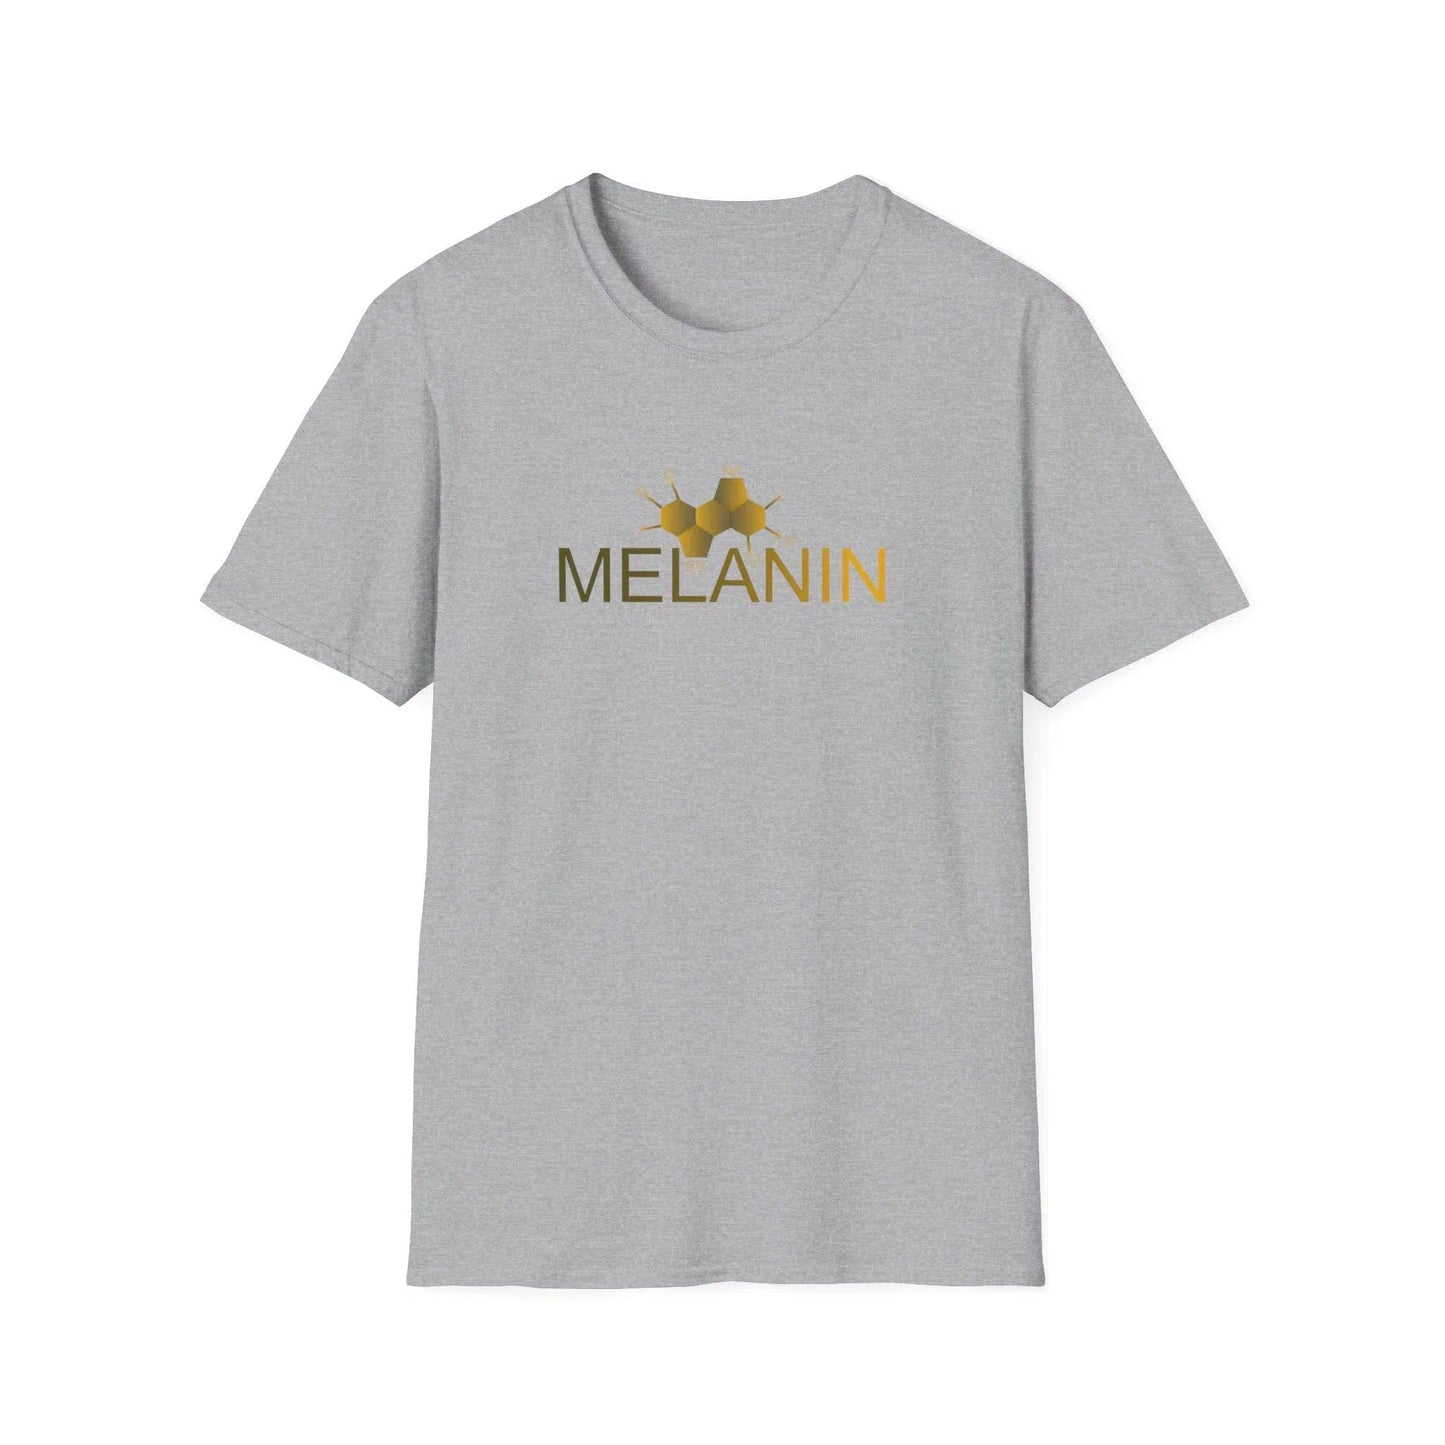 melanin tee wear